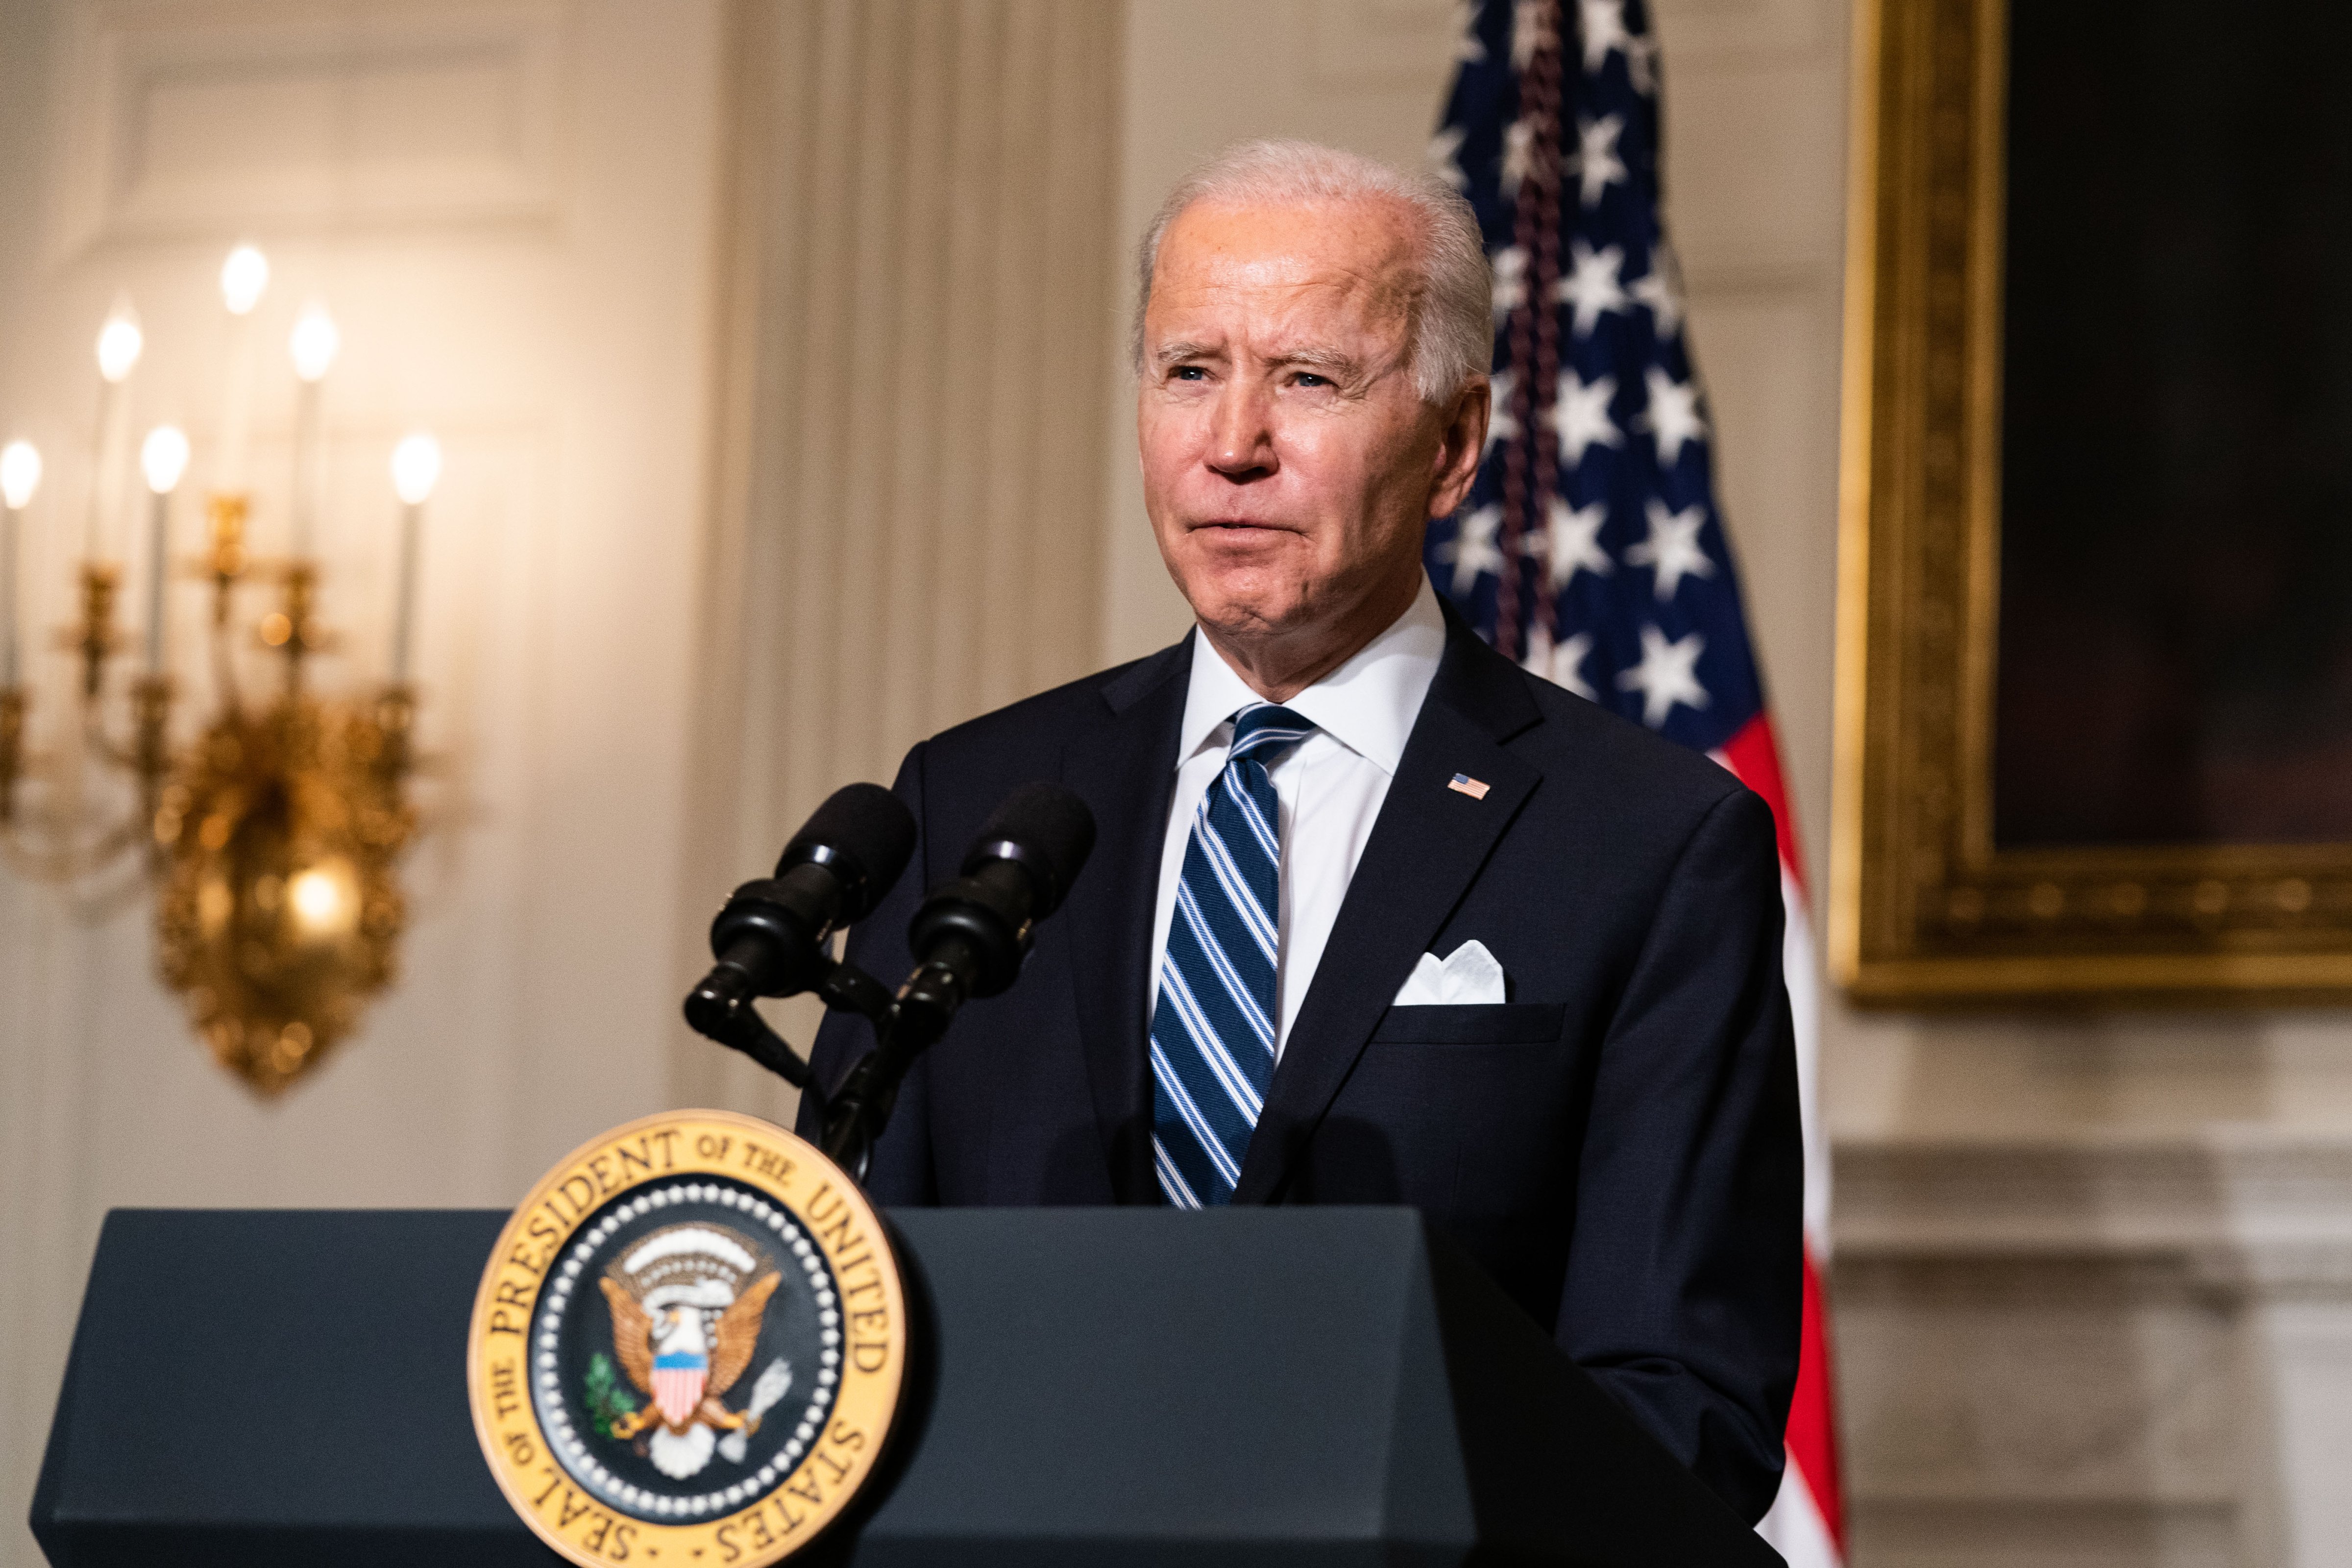 President Joe Biden speaks in the State Dining Room of the White House in Washington, D.C., on Jan. 27.